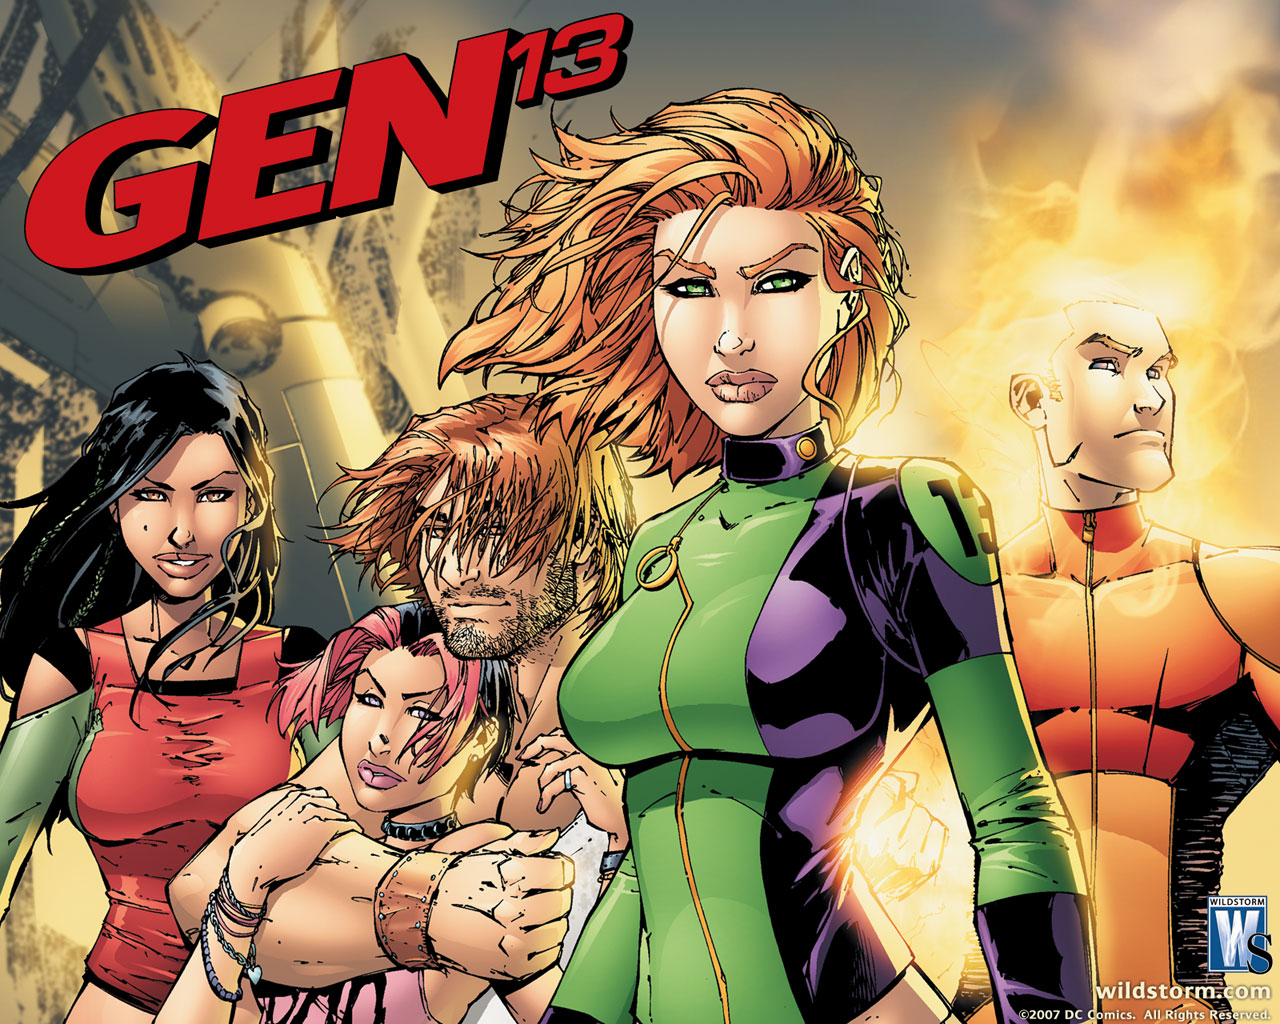 Fonds d'cran Comics et BDs Gen 13 gen 13